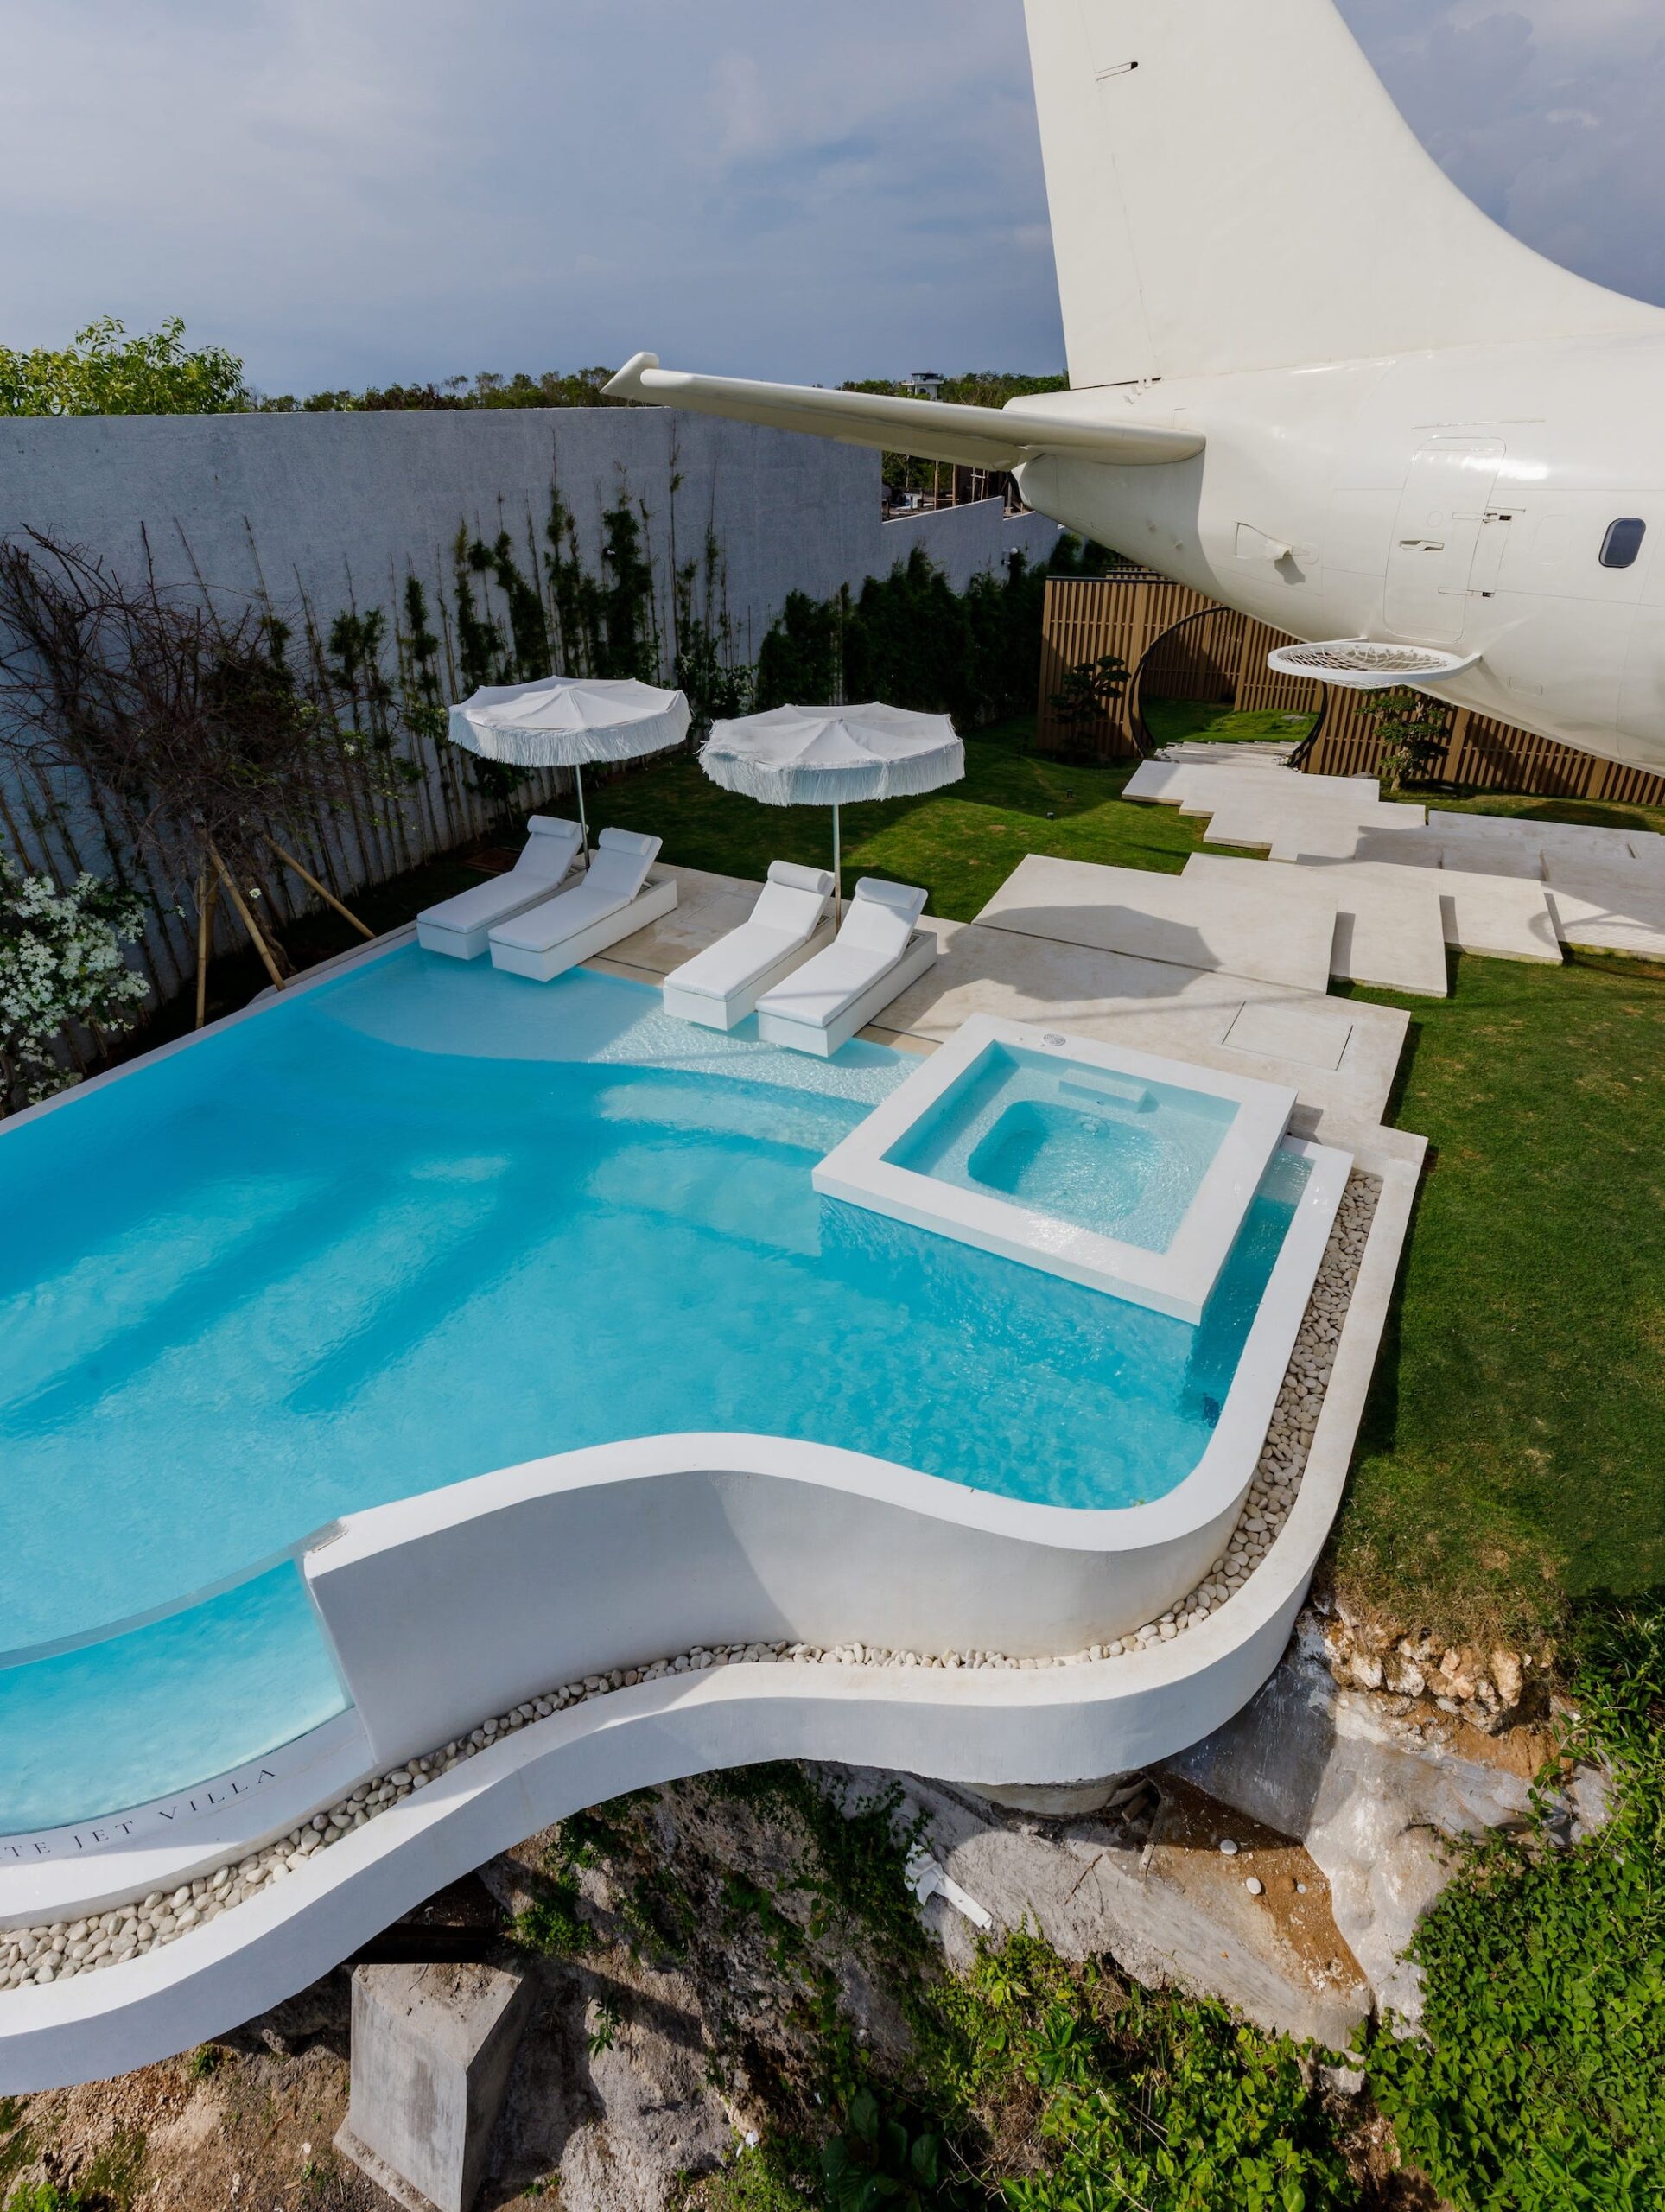 Naast het tot villa omgebouwde vliegtuig ligt een zwembad. Dat kijkt uit over het strand.